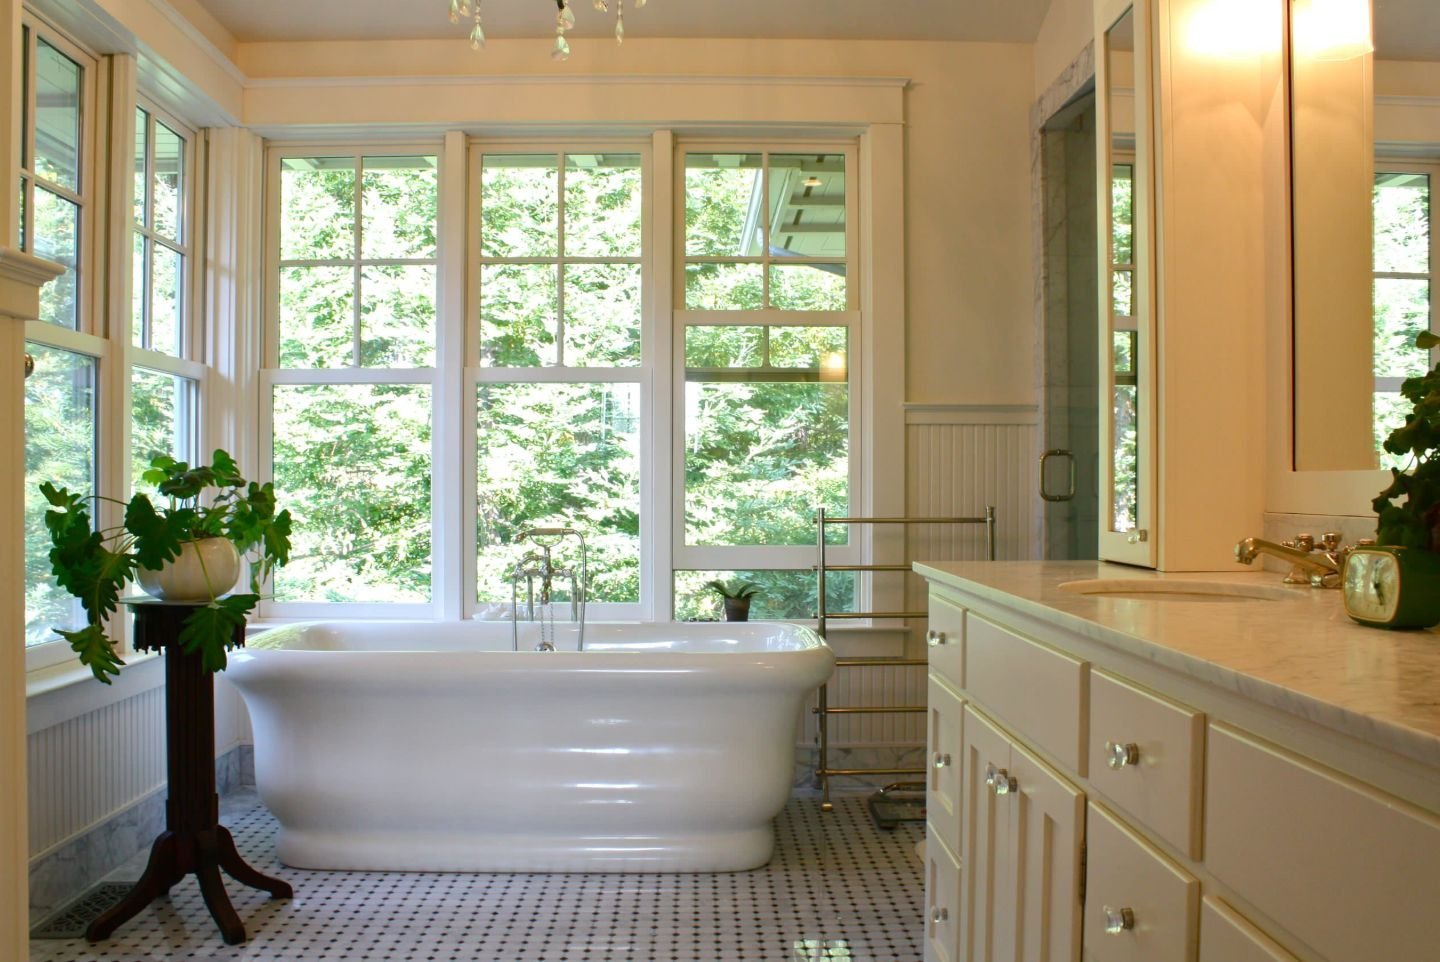 Ванна с большим окном. Ванная комната с окном. Интерьер ванны с окном. Окно в ванной комнате в частном доме. Небольшая ванная с окном.